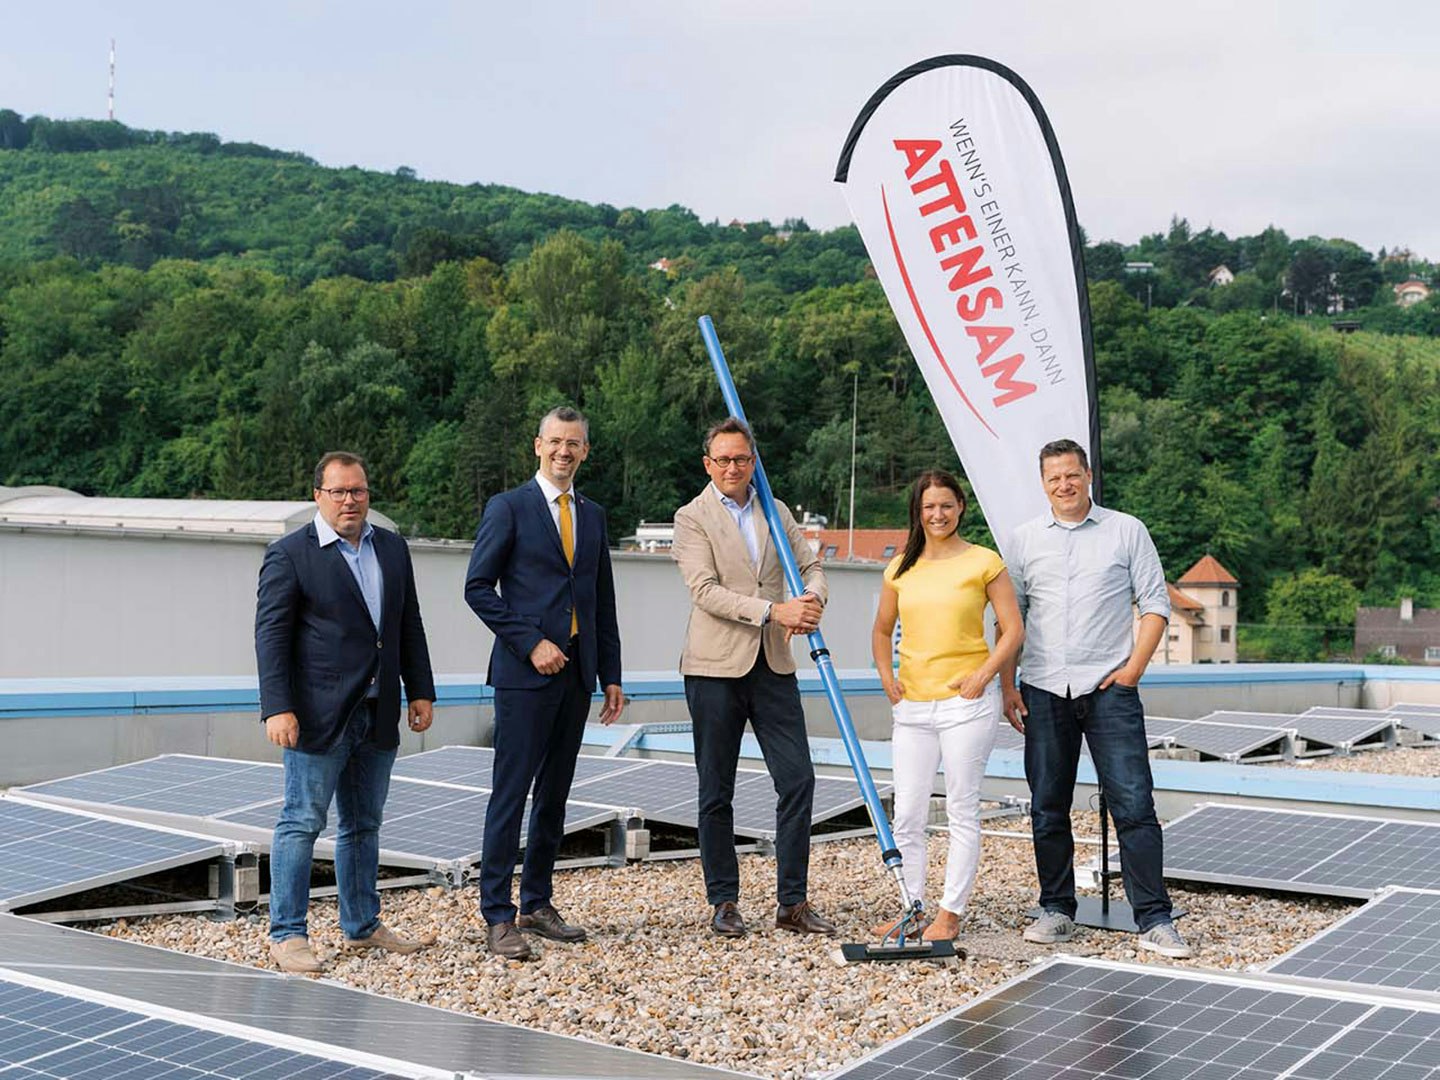 Foto: Pressemeldung_08-2021 - Attensam errichtet leistungsstarke Photovoltaikanlage in Klosterneuburg